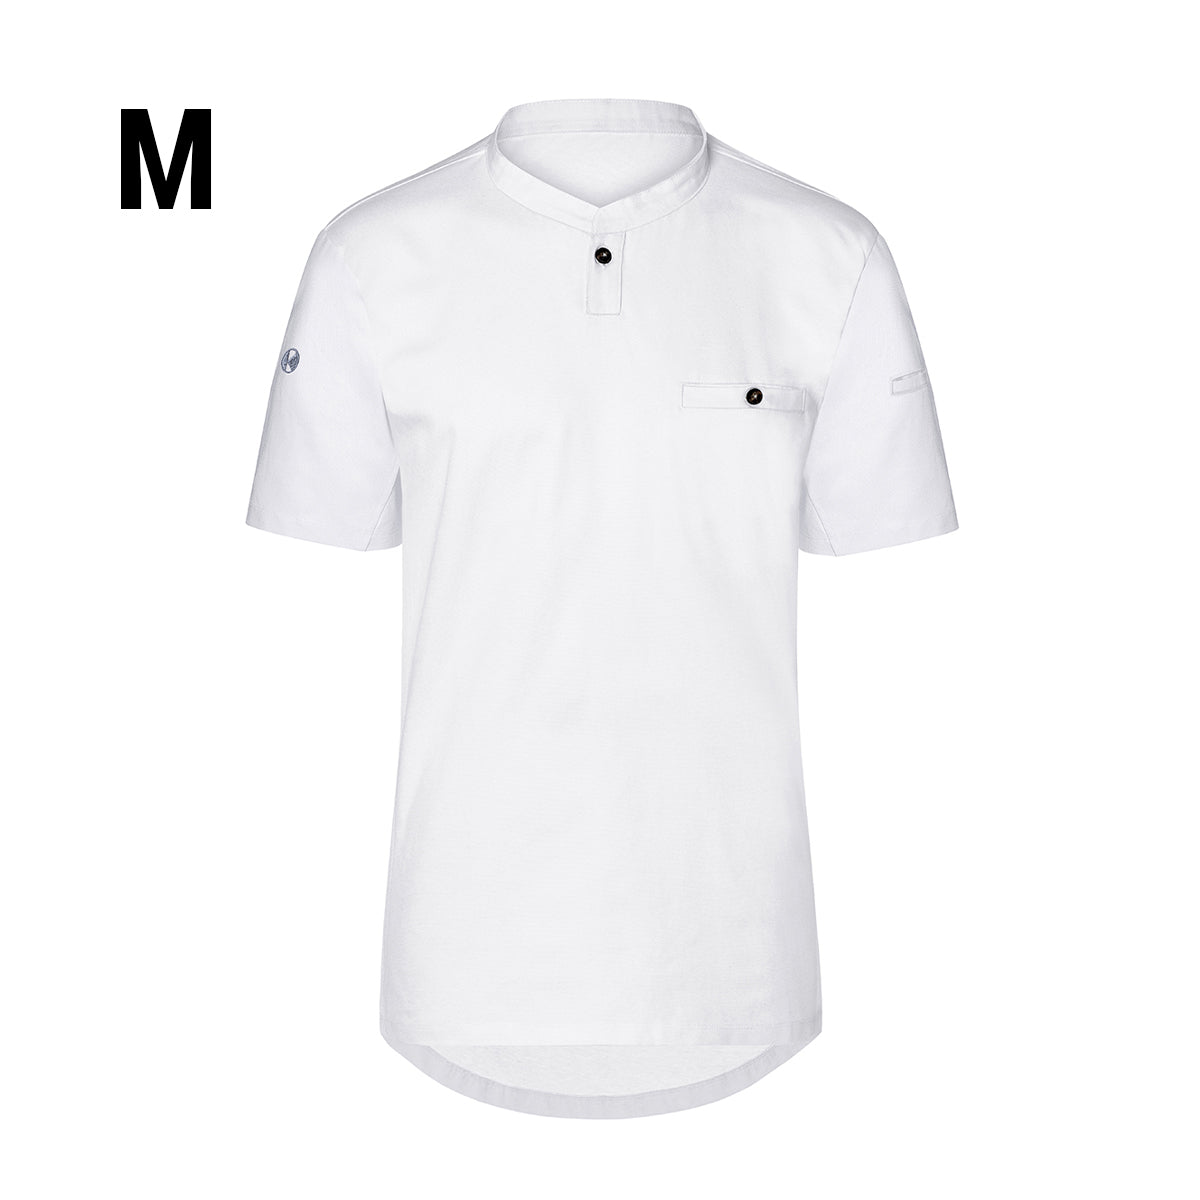 (6 stk) Karlowsky - Kortærmet arbejdsskjorte til herrer Performance - Hvid - Størrelse: M